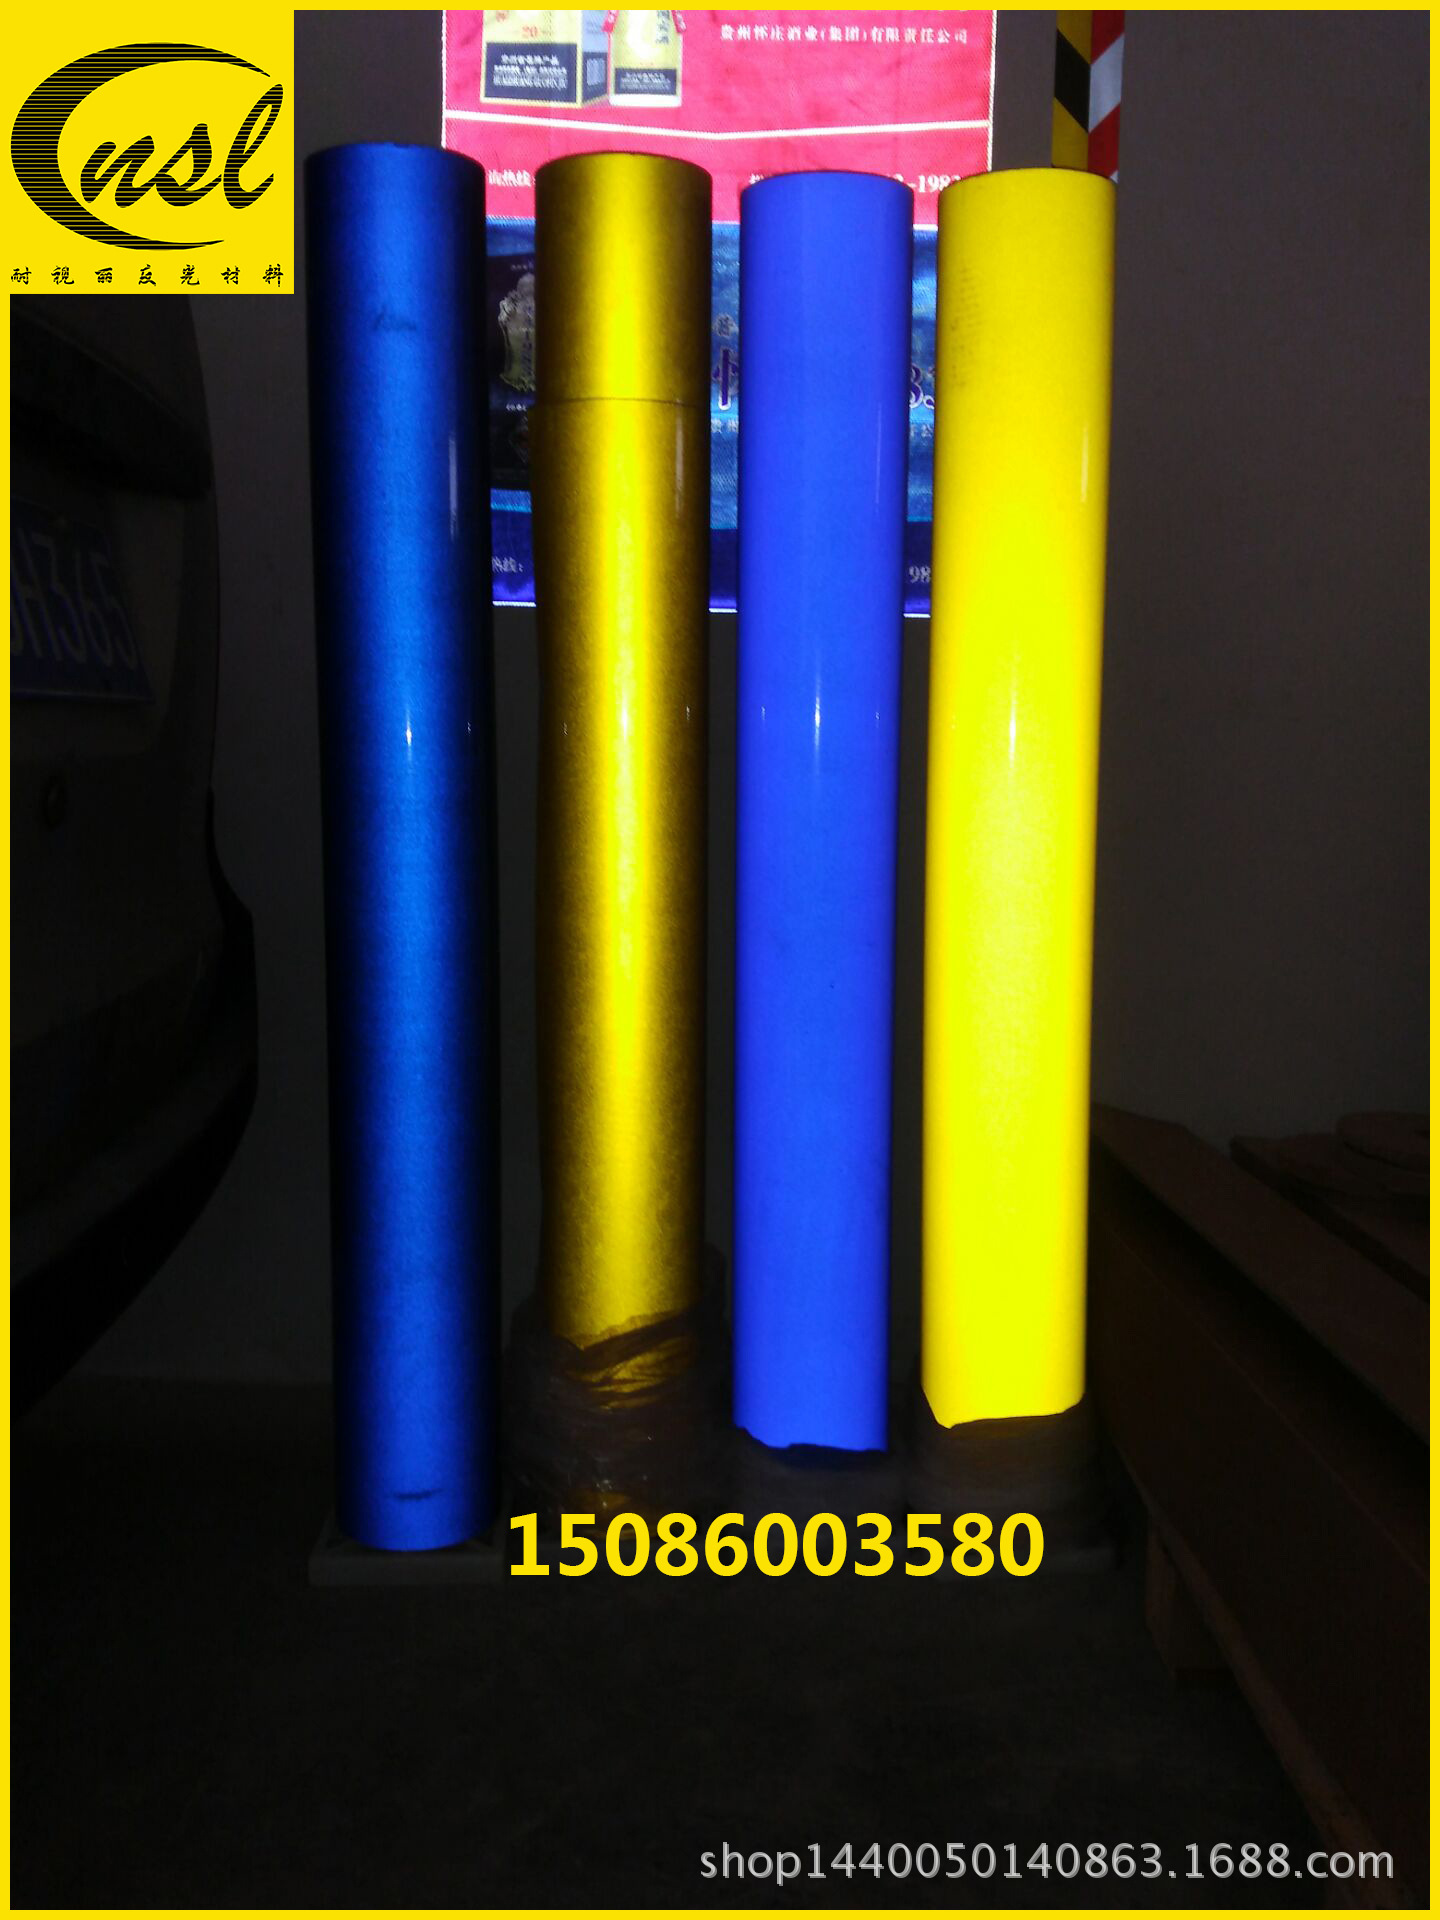 凯里工程级反光膜 凯里反光材料 凯里广告级反光膜 凯里反光膜4